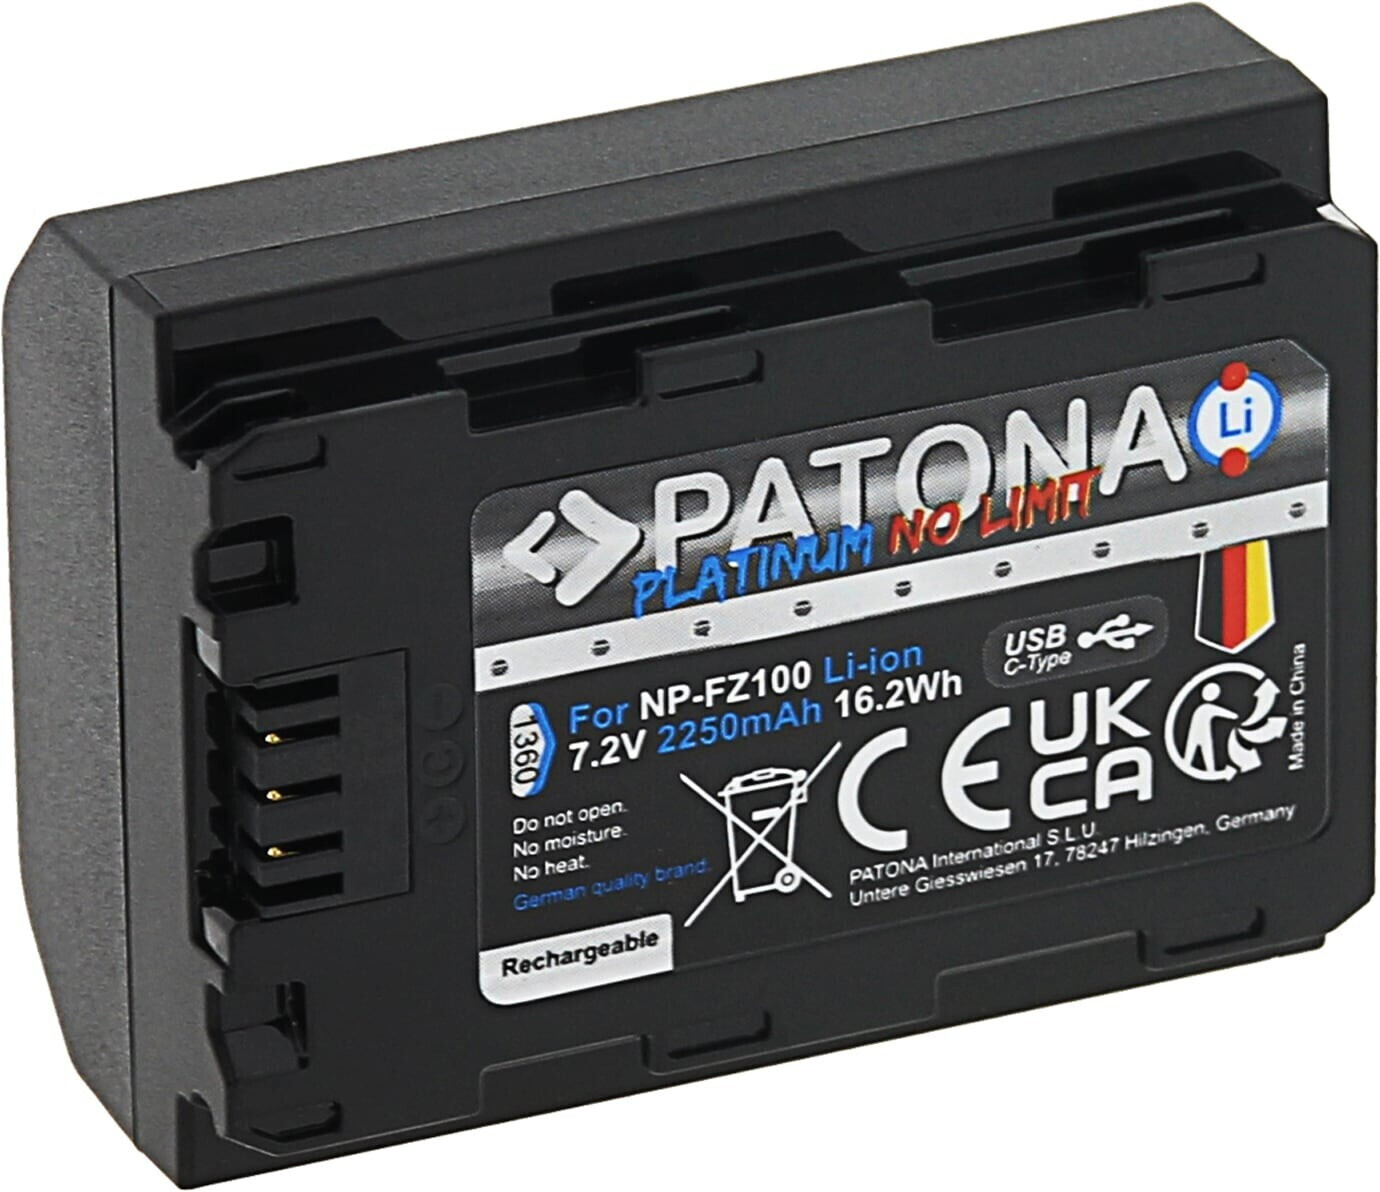 Patona Platinum Ersatzakku für Sony NP-FZ100 (2250mAh) ab 39,00